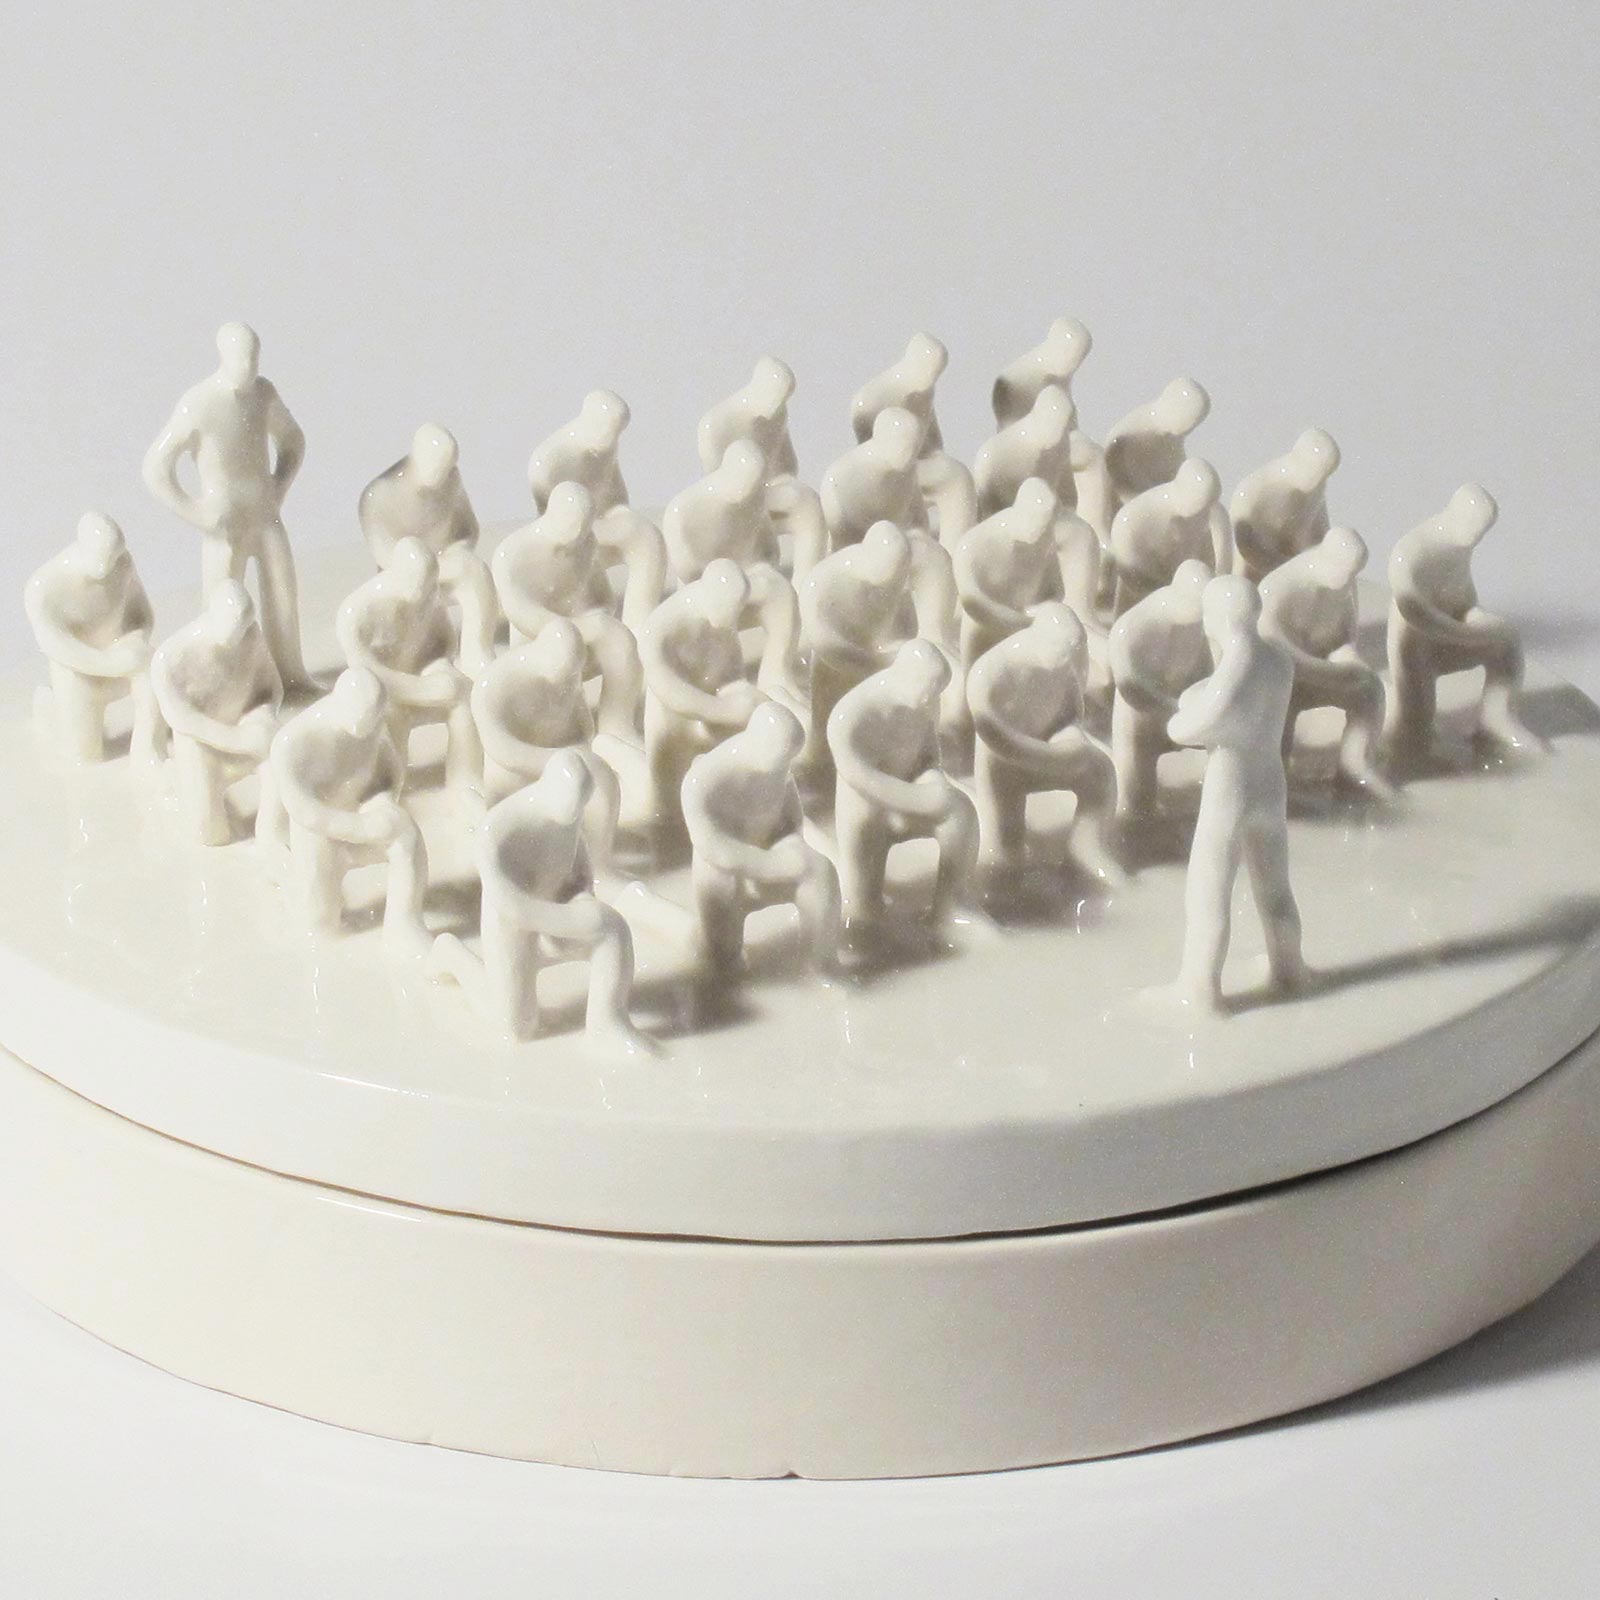 0-Gabriele-Mallegni,-No-obey-box,-scatola-scultura,-ceramica-bianca-smaltata,-2016,-pezzo-unico,-sculpture-box,-white-glazed-ceramic,-uniqu-piece